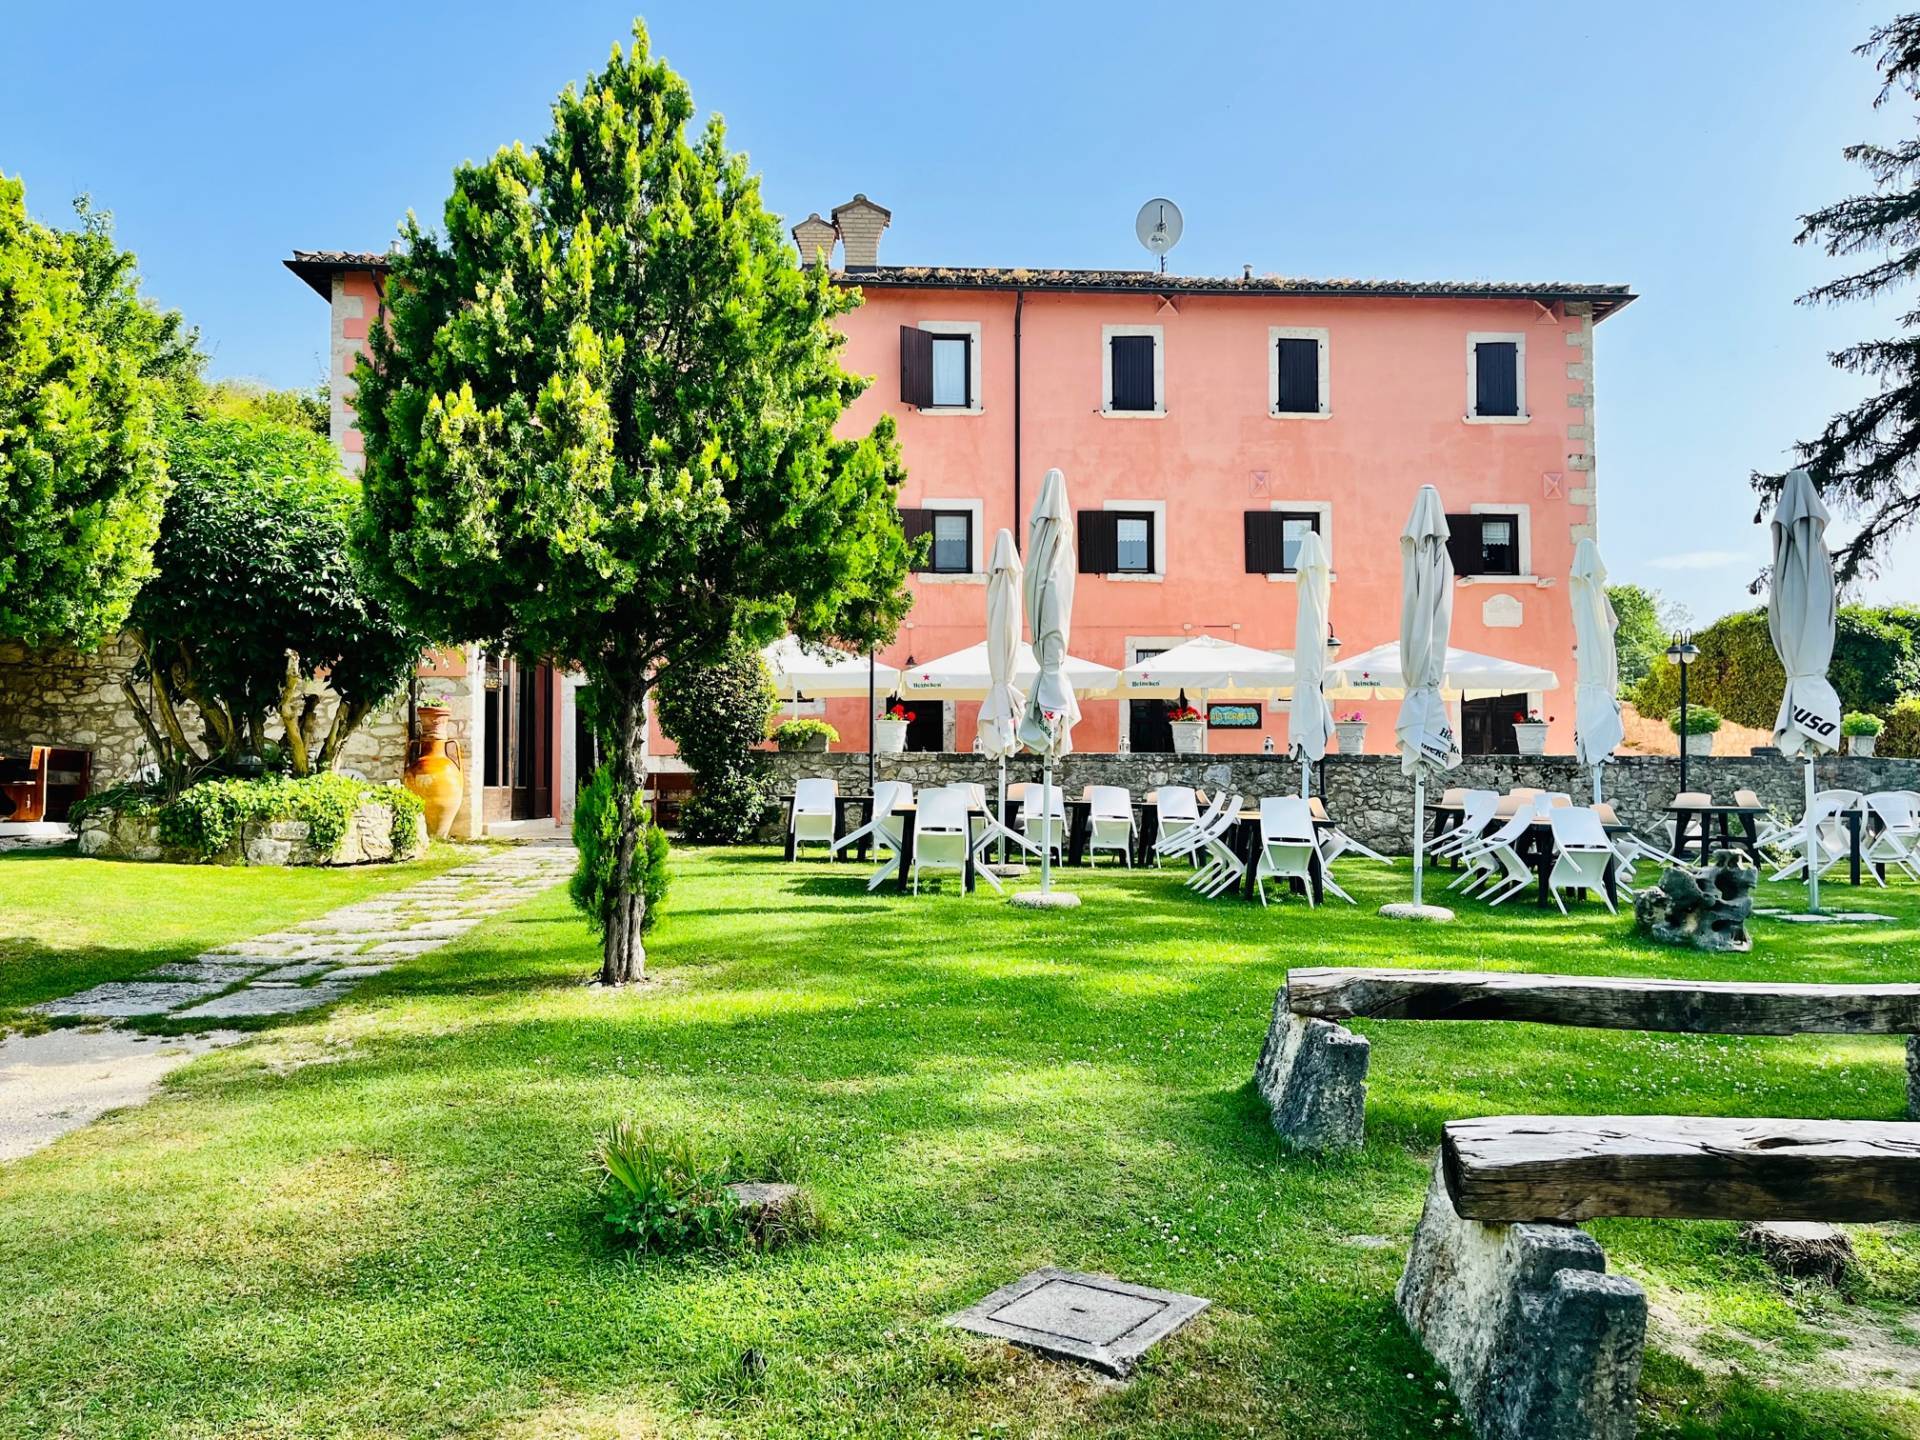 Attivit commerciale in vendita, Ascoli Piceno castel trosino